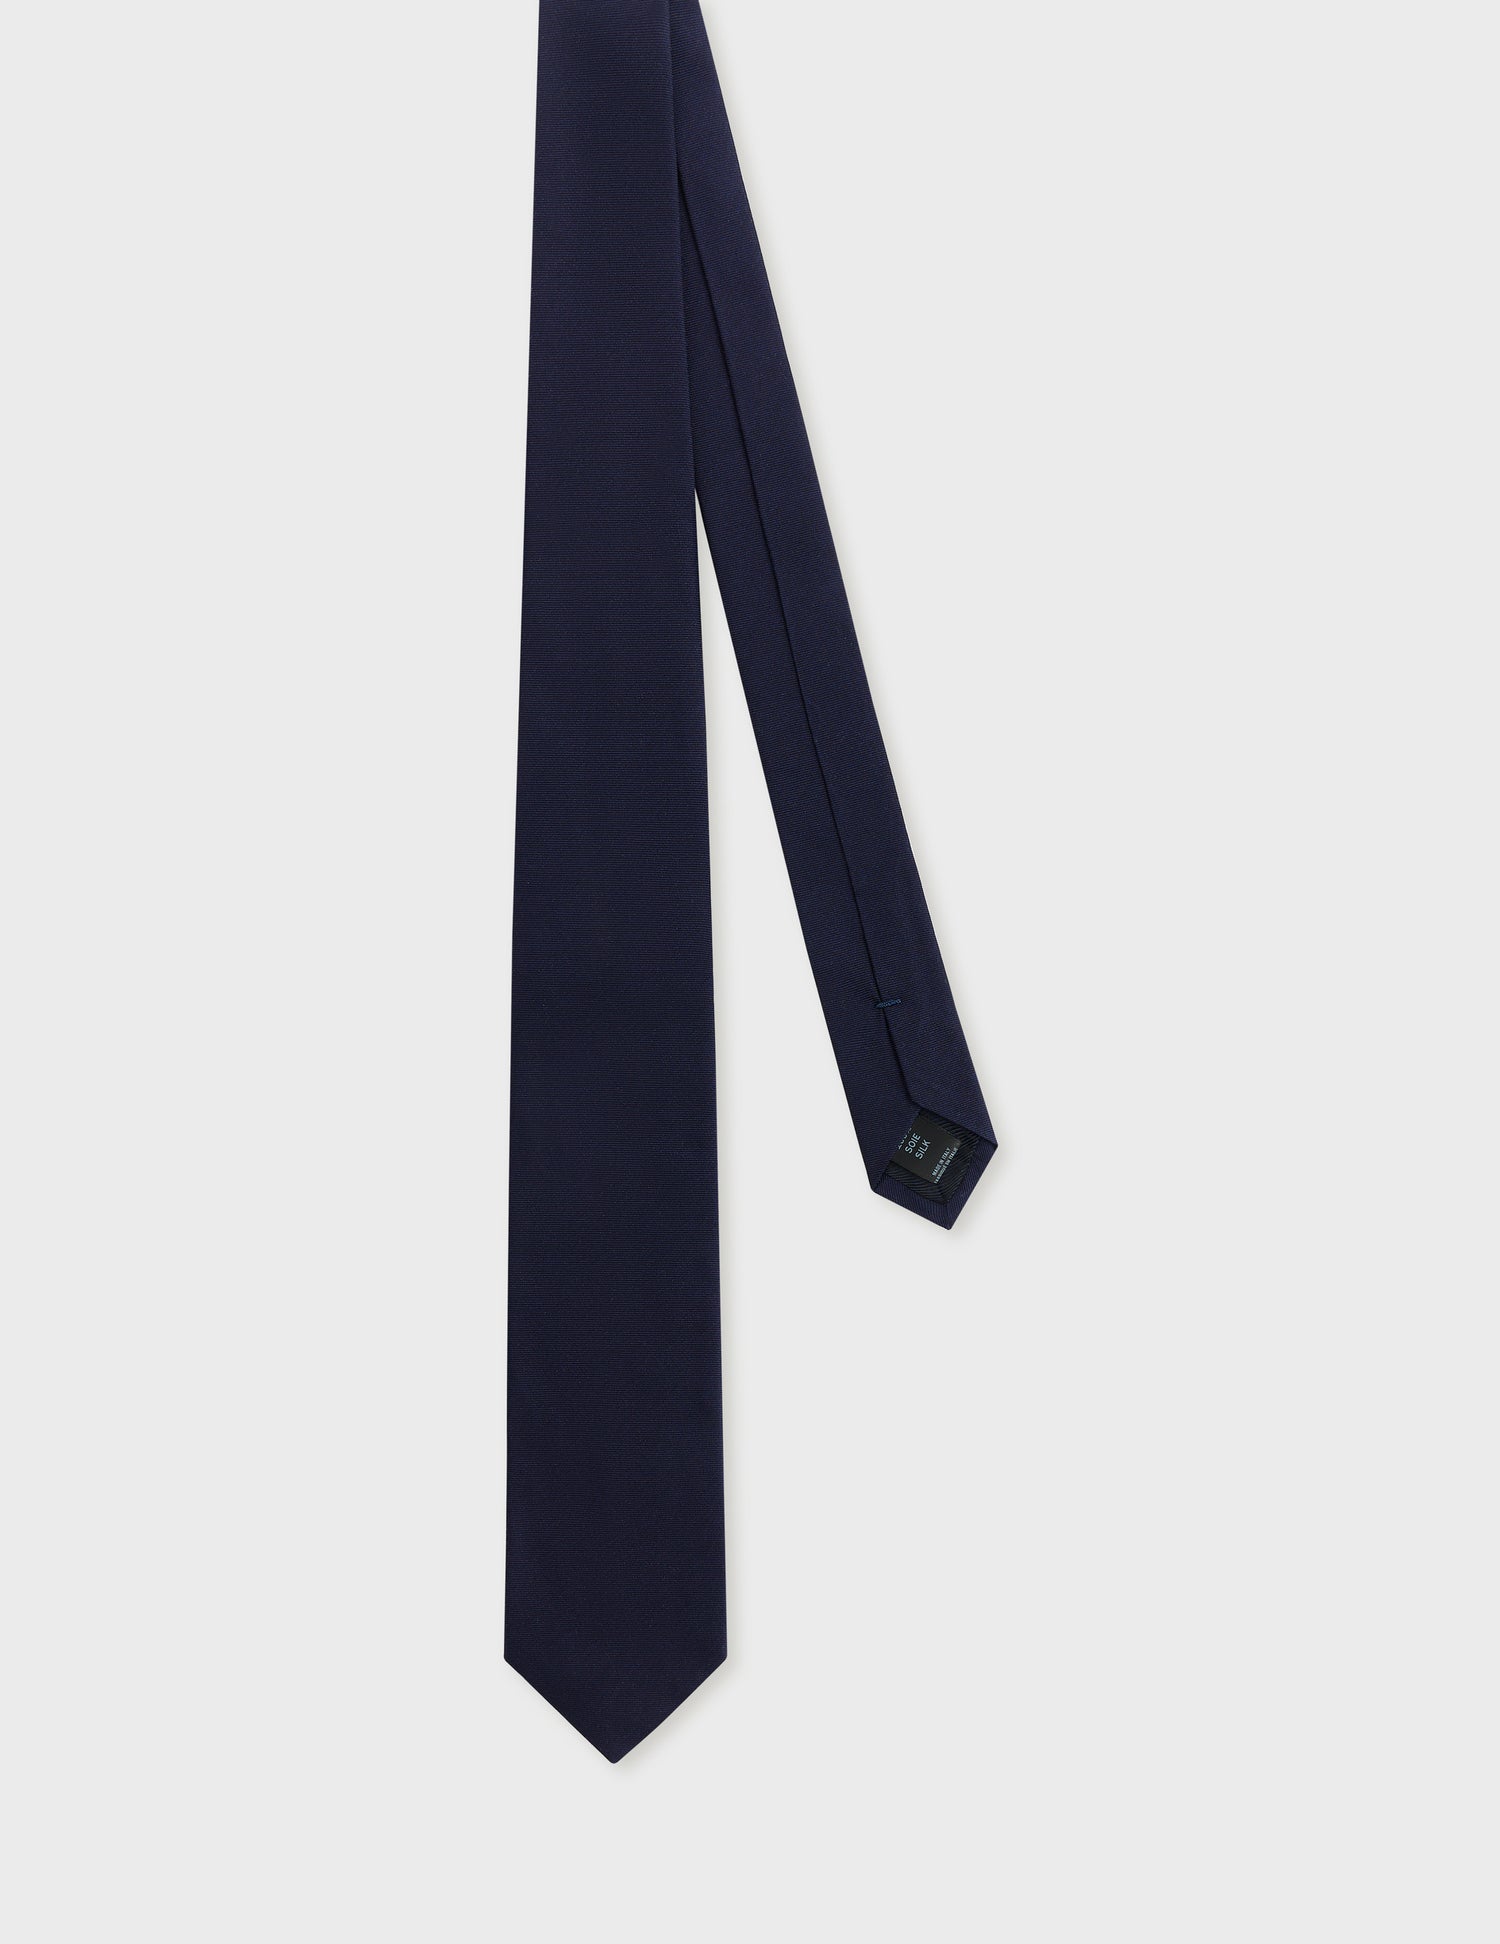 Silk navy tie